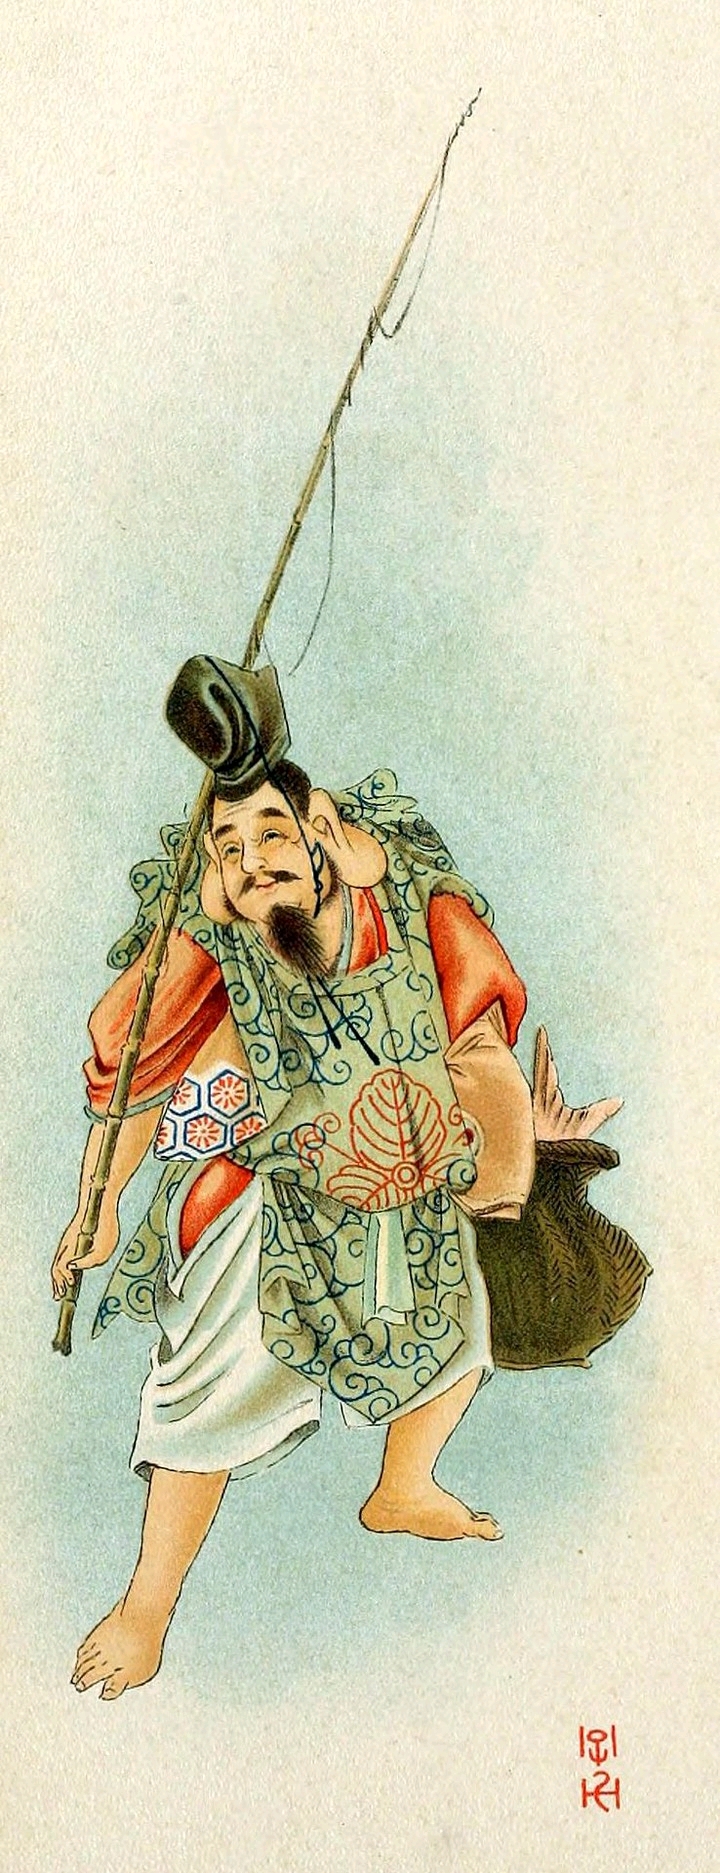 传说,惠比寿神教给人们用鱼和农作物进行物物交换,因而被日本人崇为